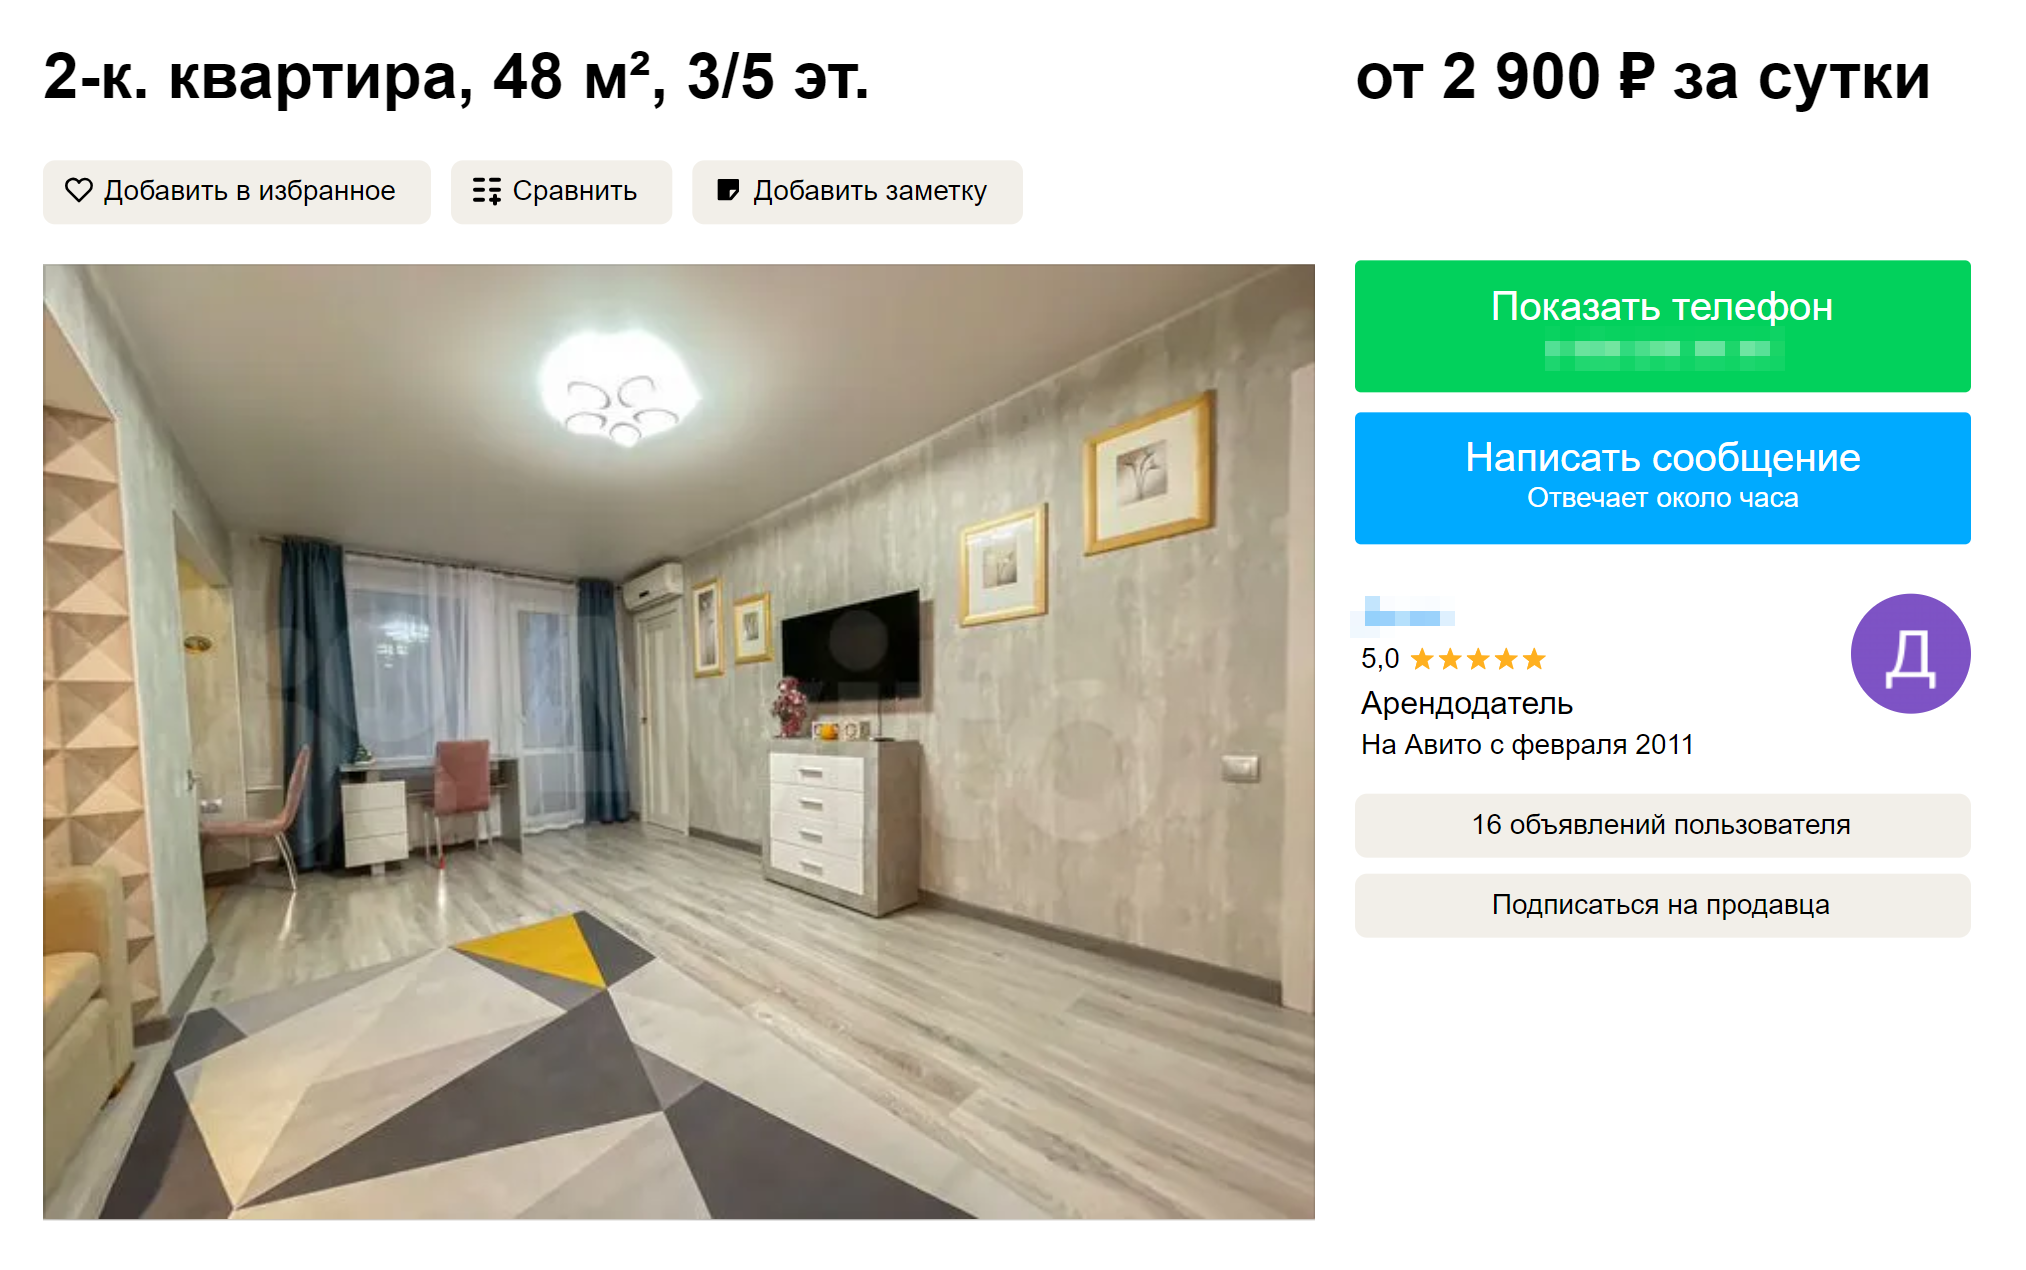 Конкурент из соседнего дома, на которого мне захотелось равняться. Тоже двухкомнатная квартира с отличными отзывами и любопытным оформлением. Календарь открывается по кнопке «Проверить свободные даты» — он демонстрирует занятость практически 100%. Источник: avito.ru